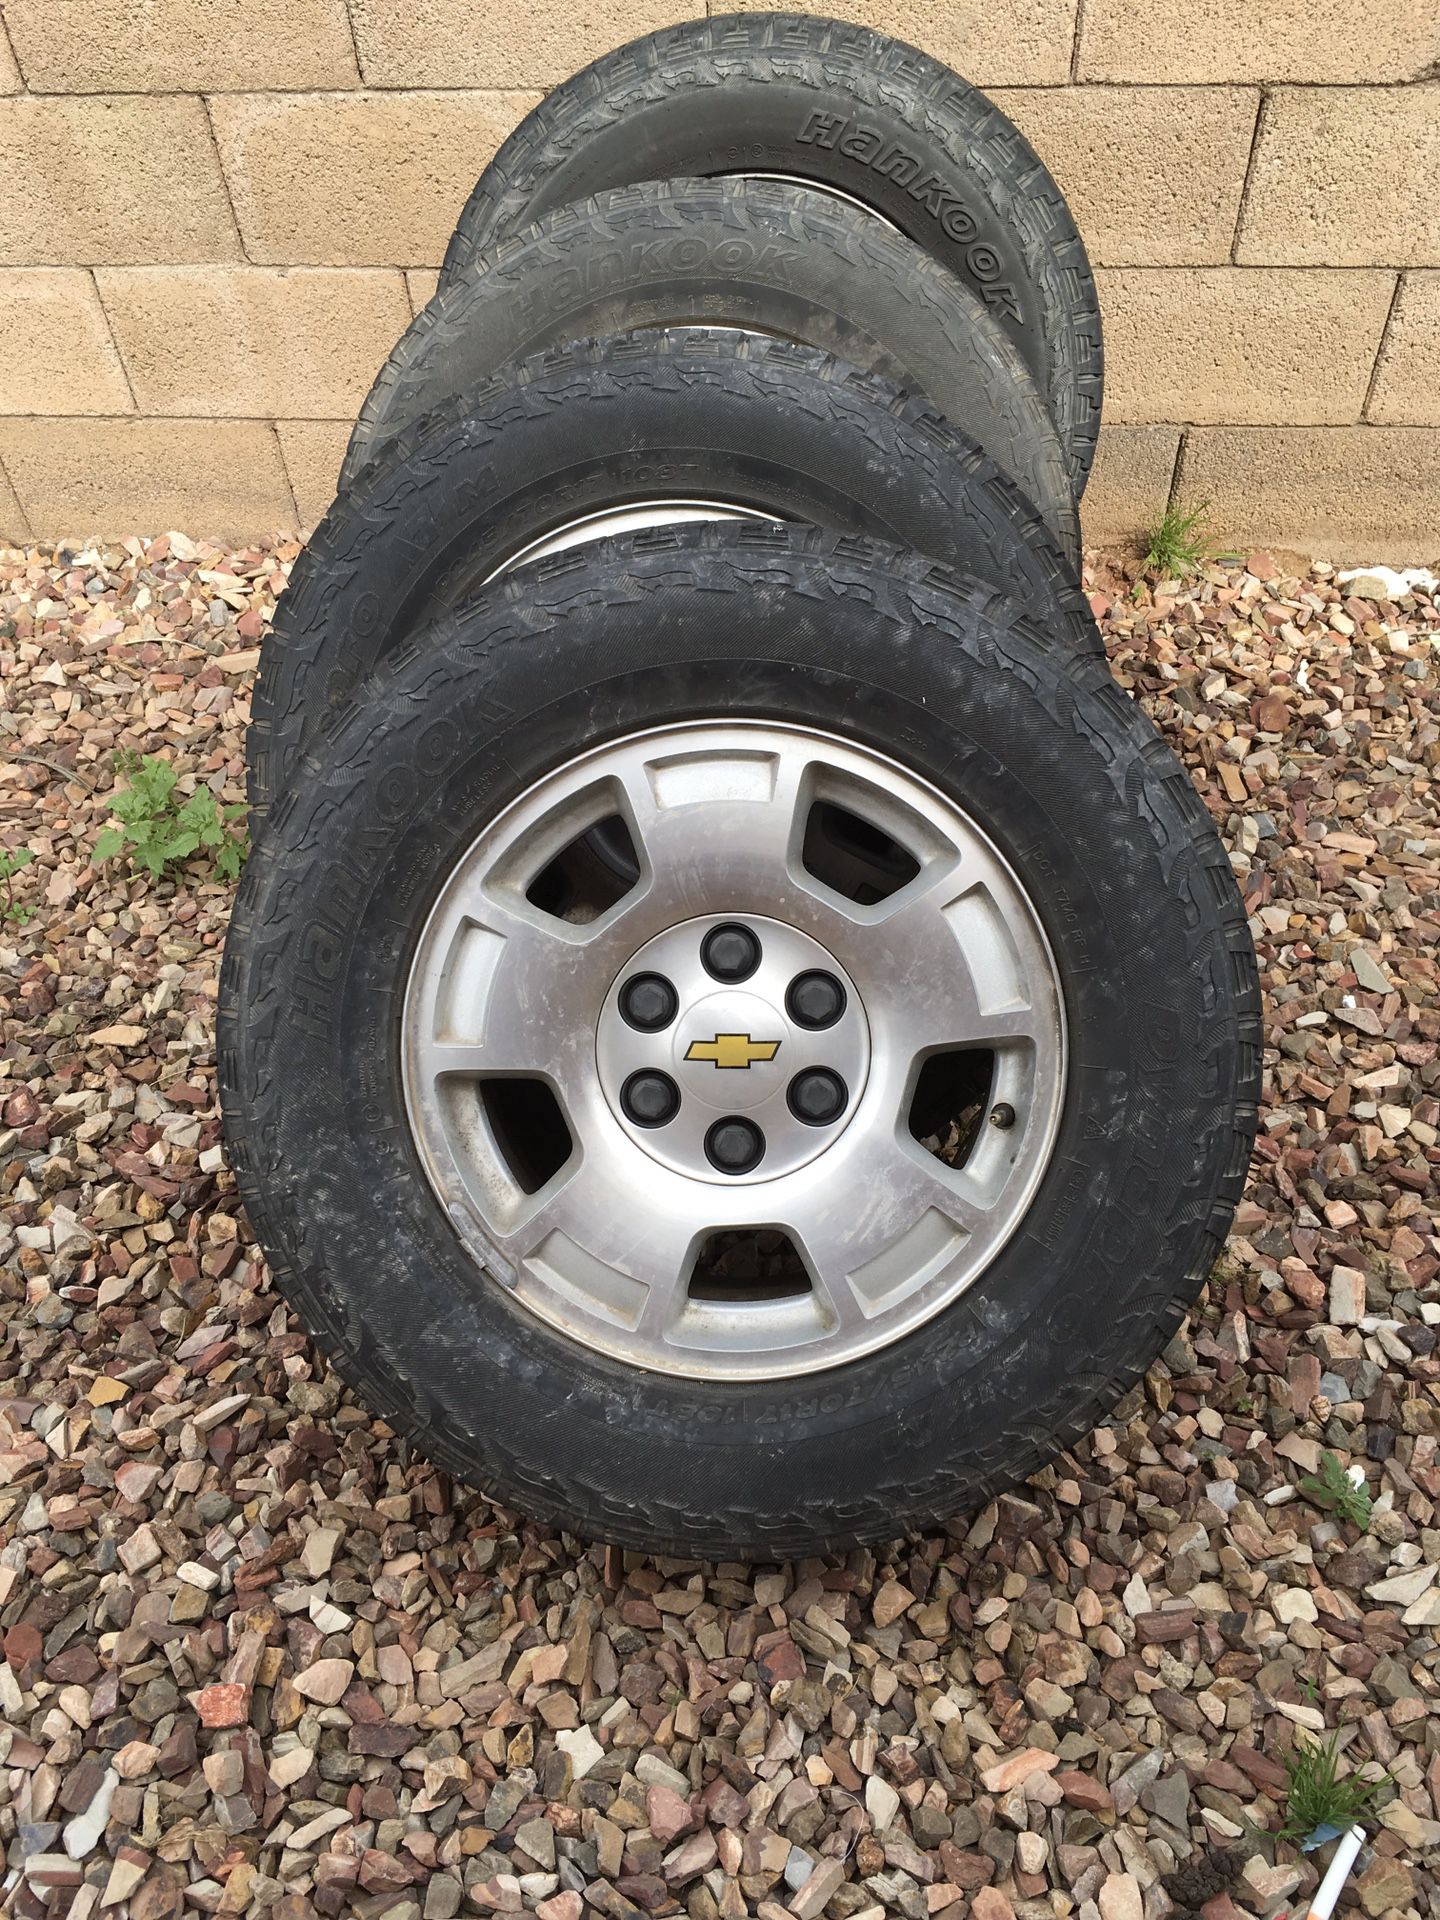 Chevy wheels & Tires 6 lug